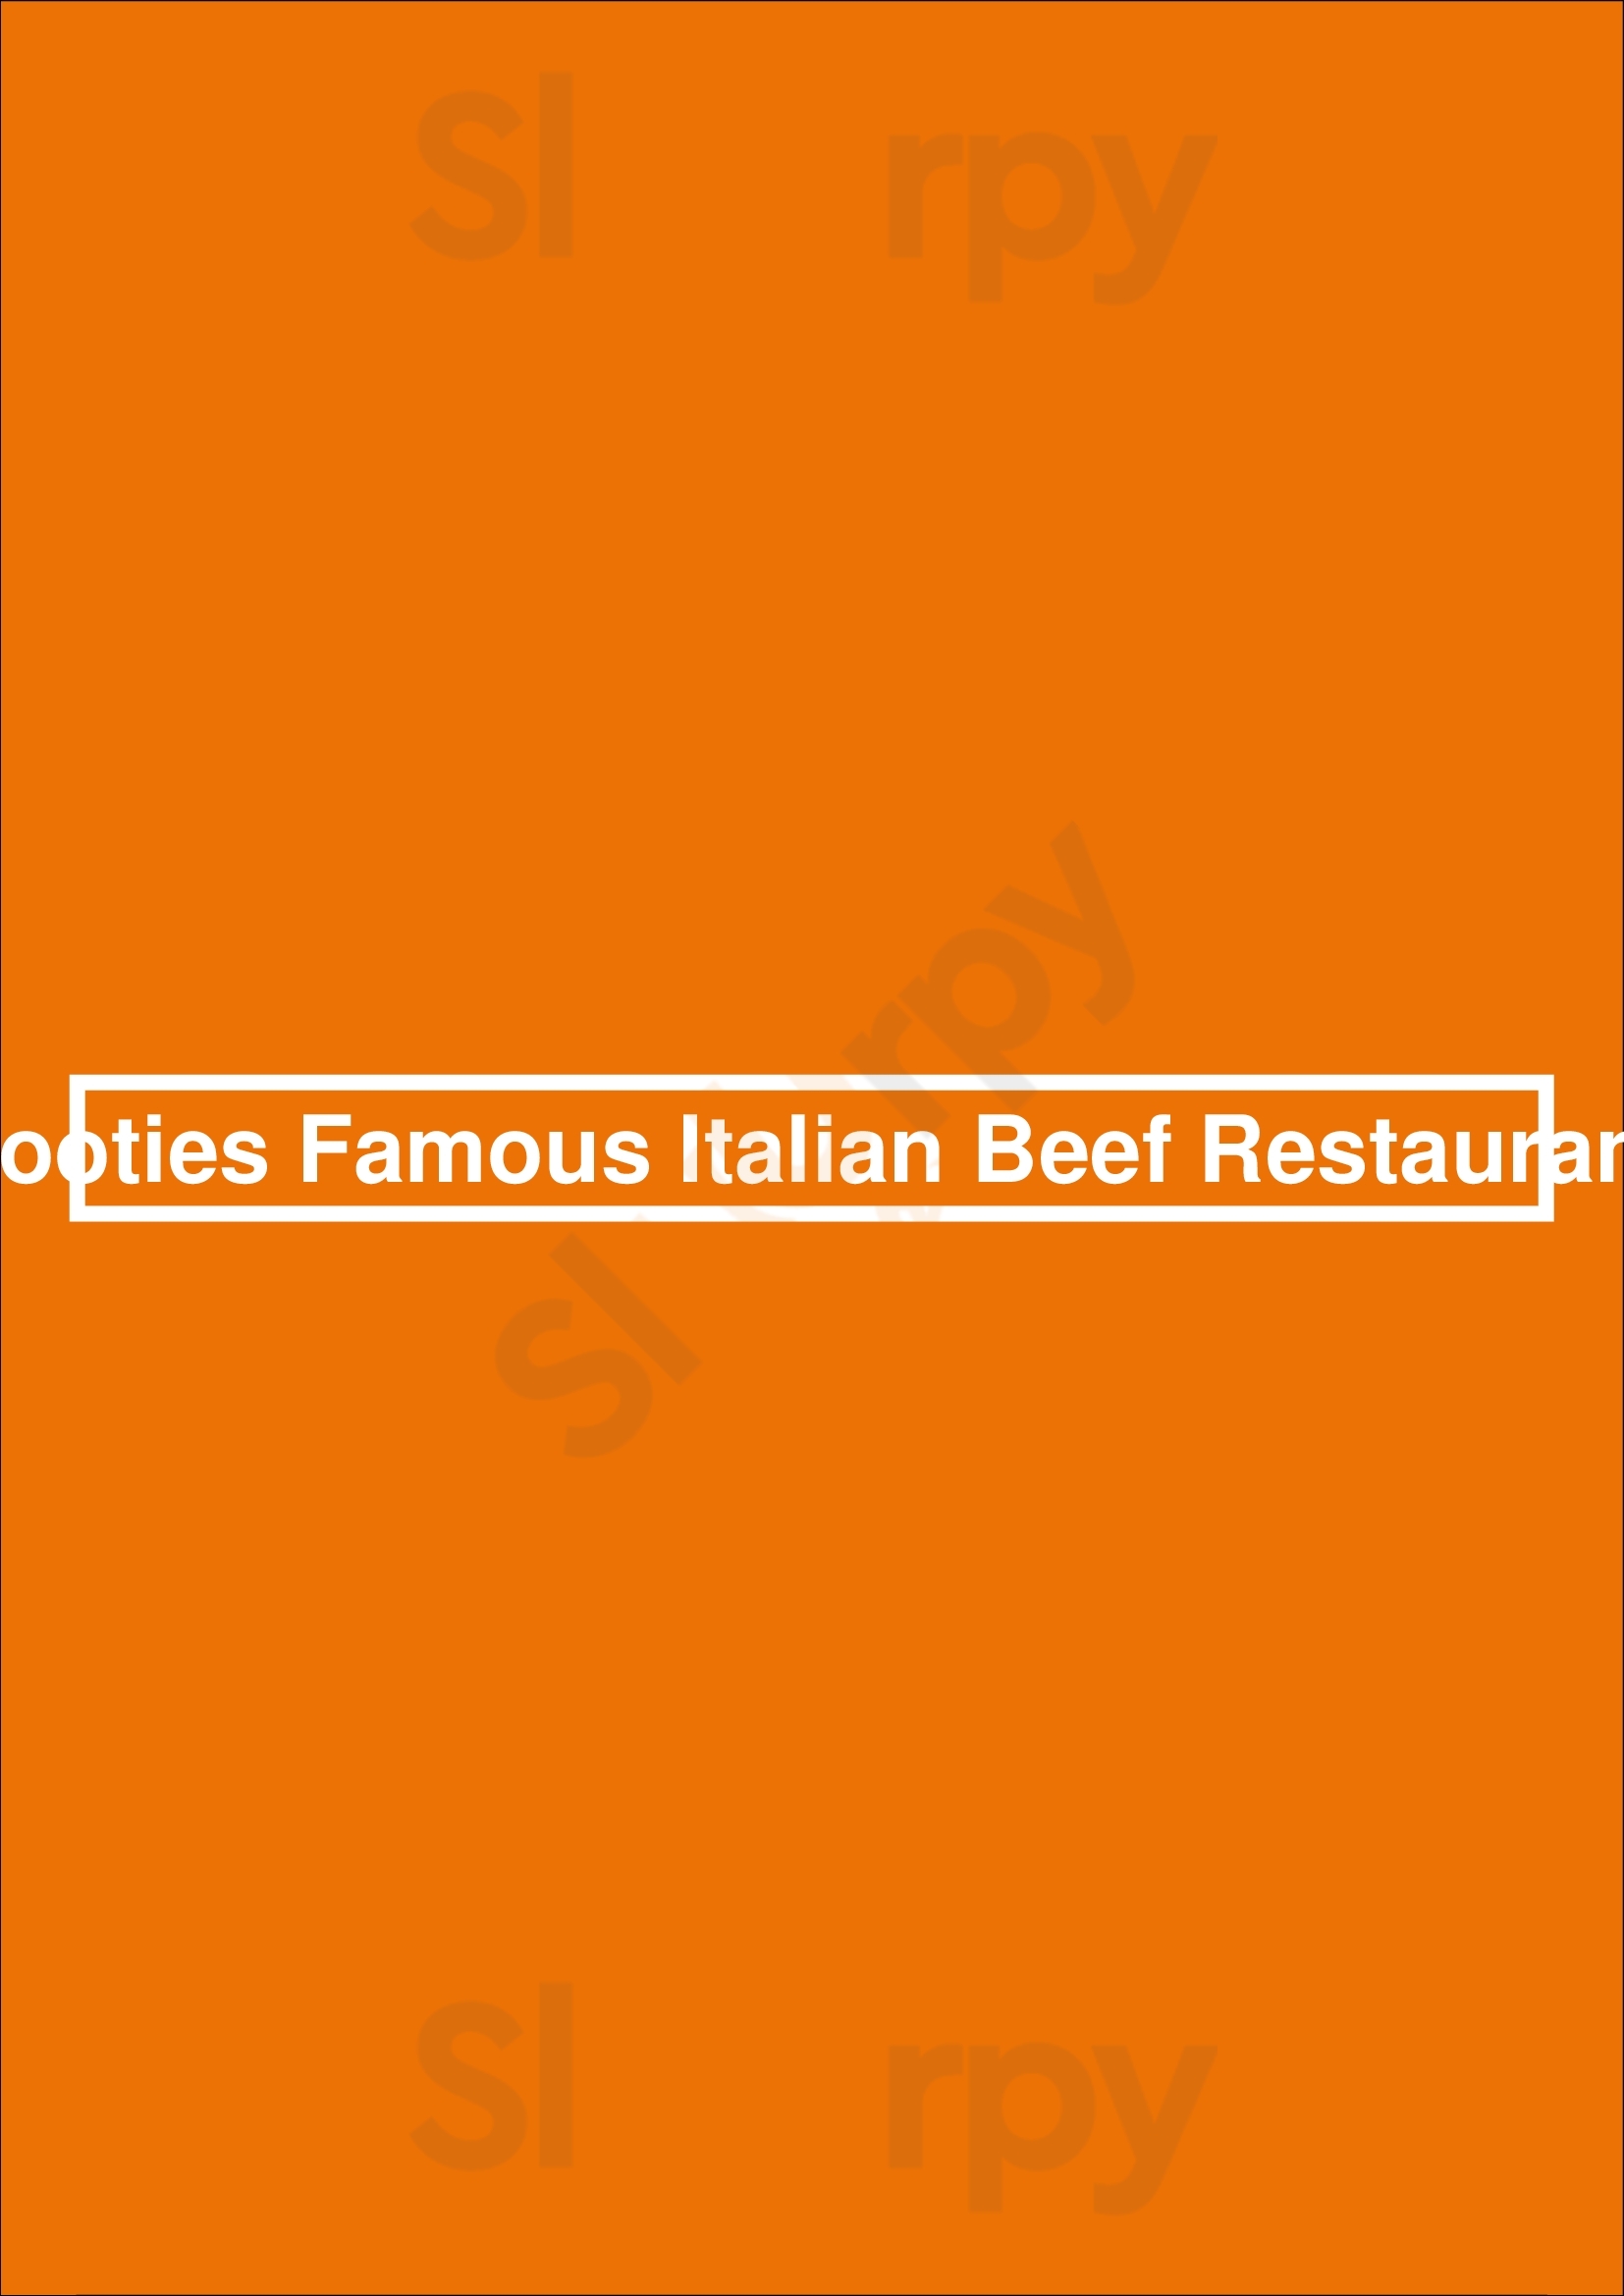 Tooties Famous Italian Beef Restaurant Pittsburgh Menu - 1